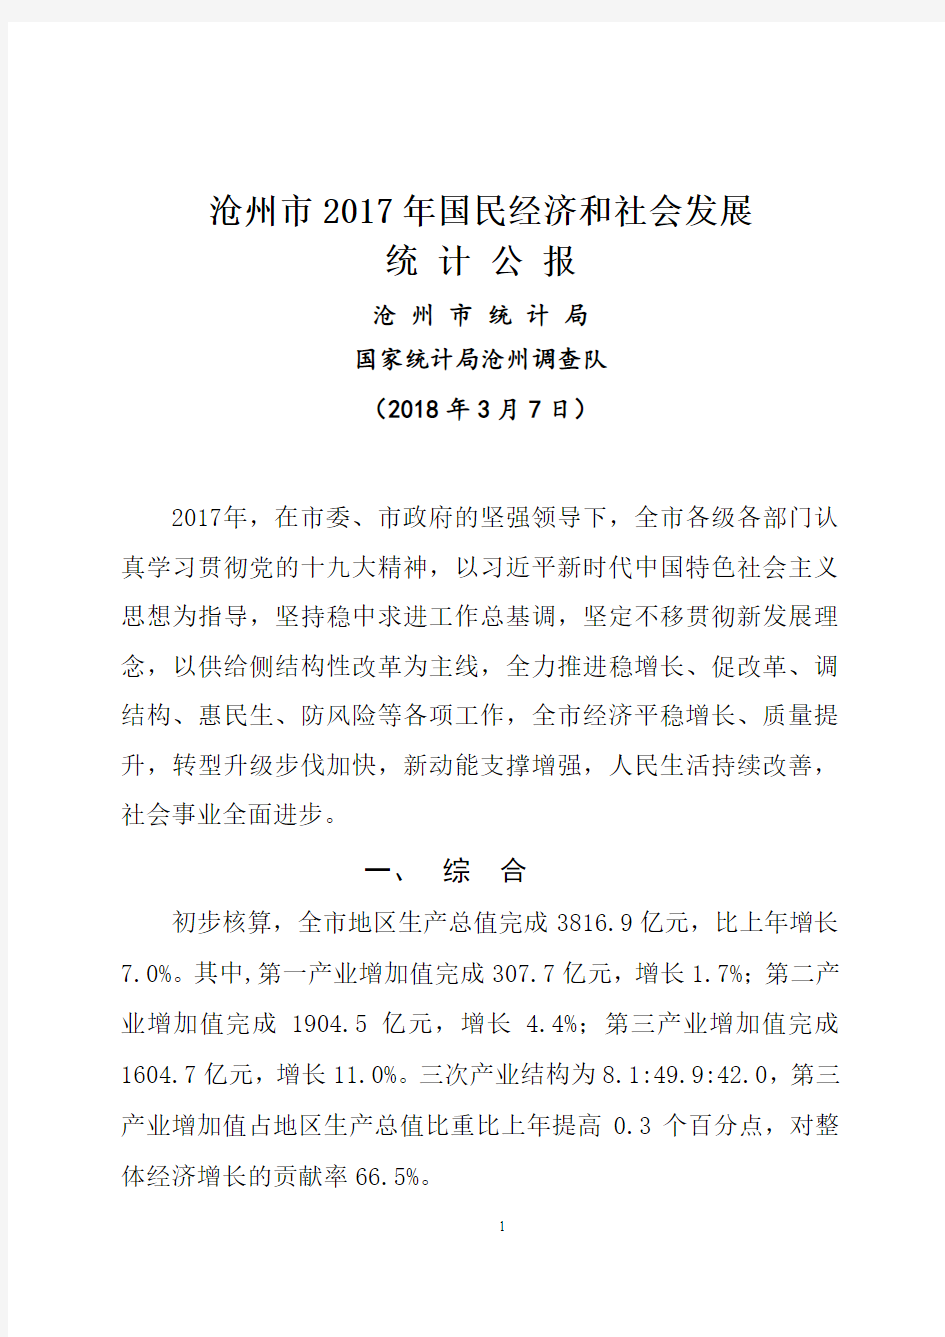 沧州市2017年国民经济和社会发展统计公报3.7